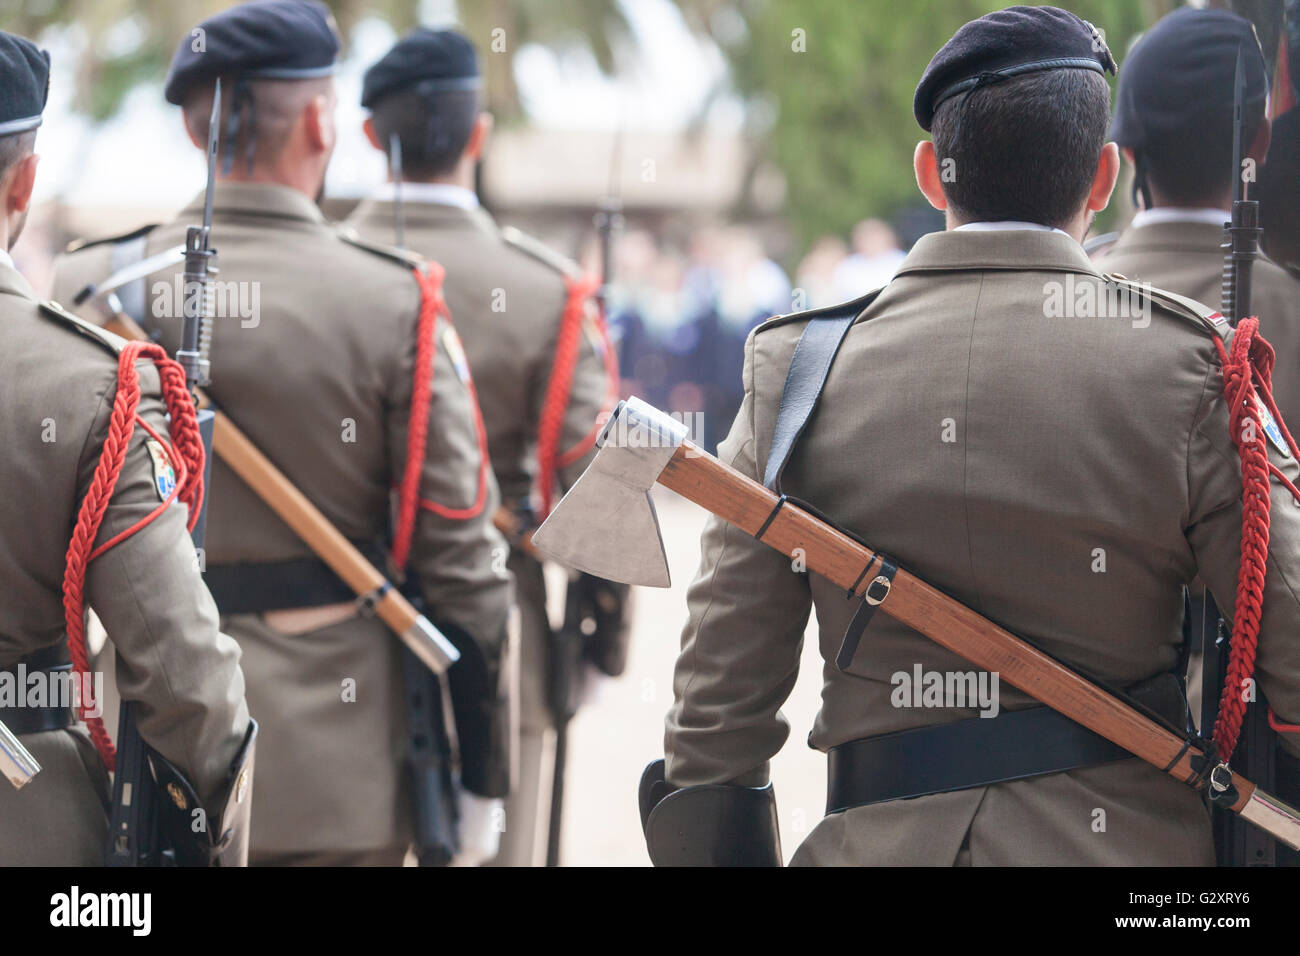 Badajoz, Espagne - 25 mai 2016 : des troupes espagnoles au cours de la journée des forces armées. Axs sur retour Banque D'Images